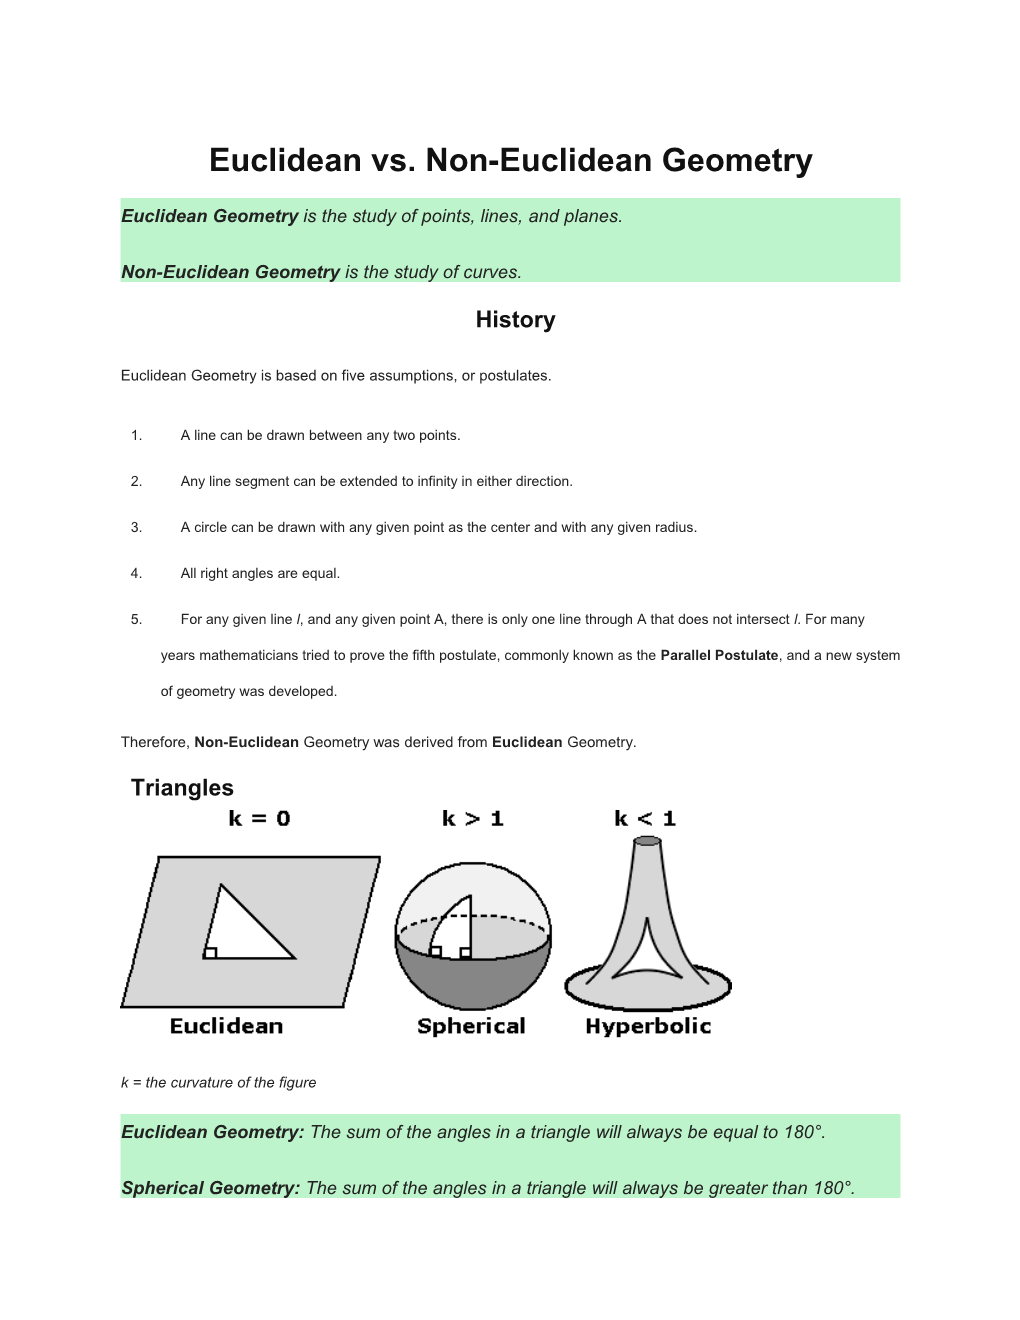 Euclidean Vs. Non-Euclidean Geometry